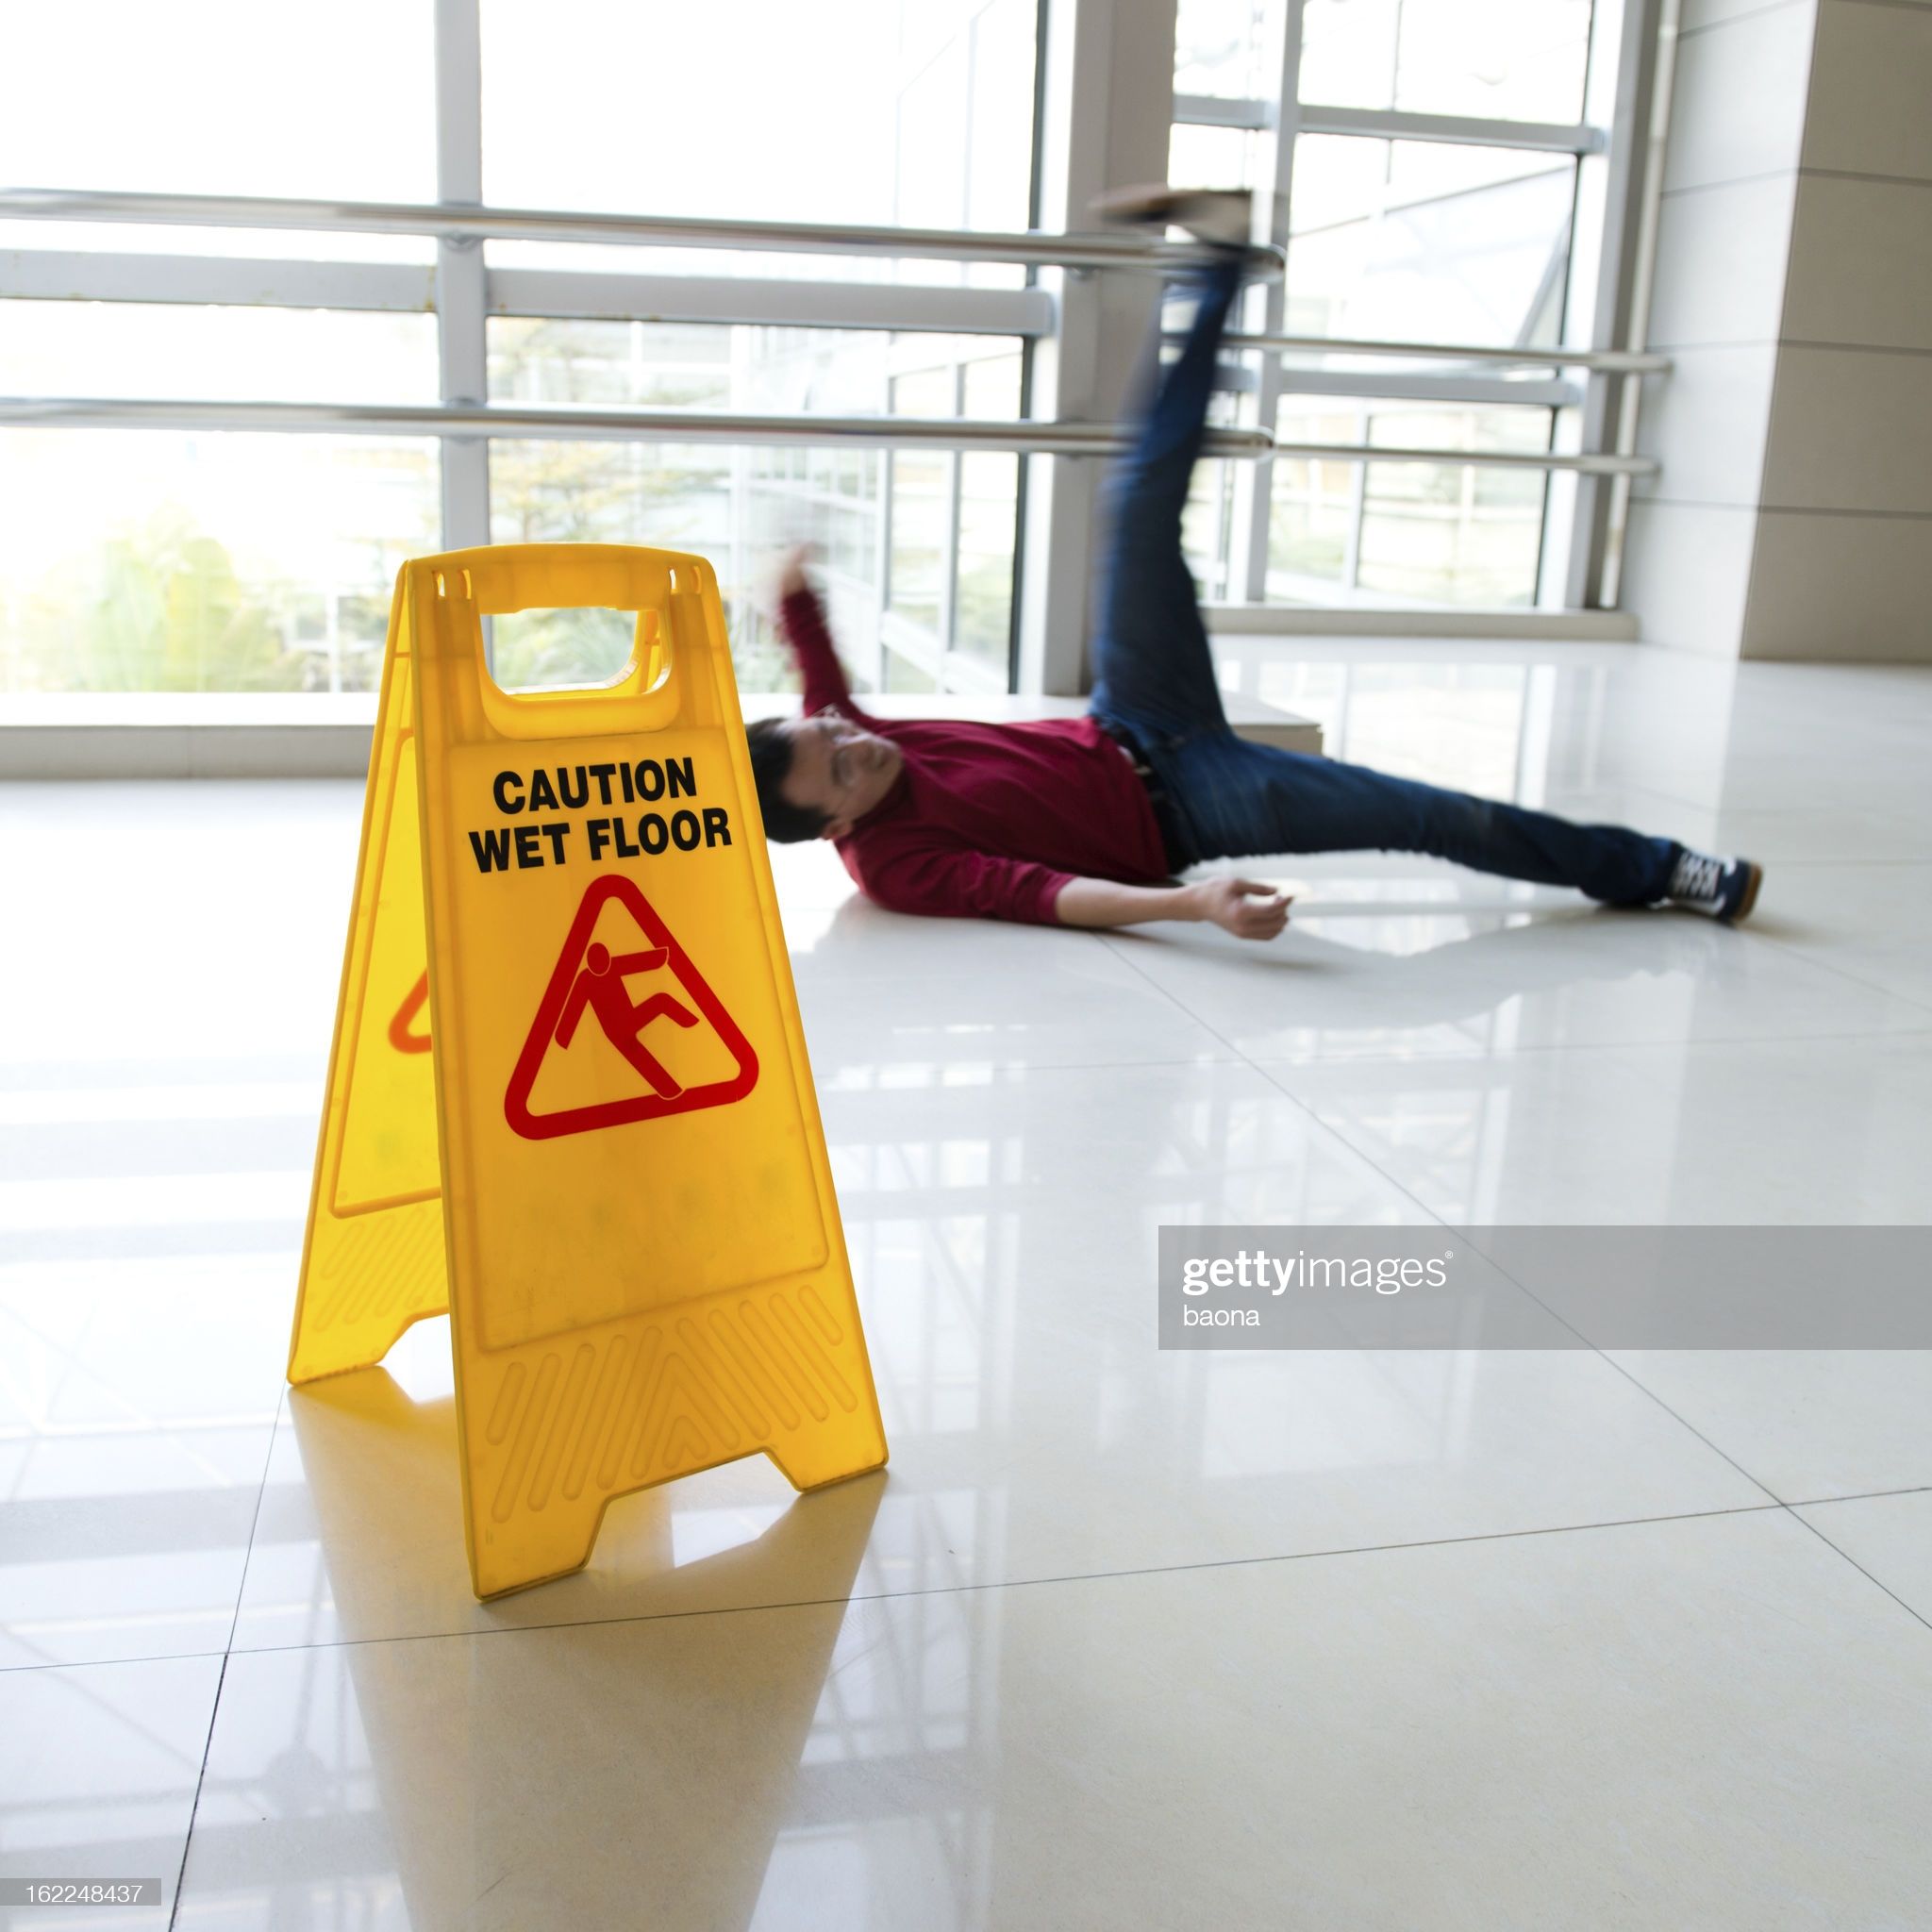 Man slipped on wet floor